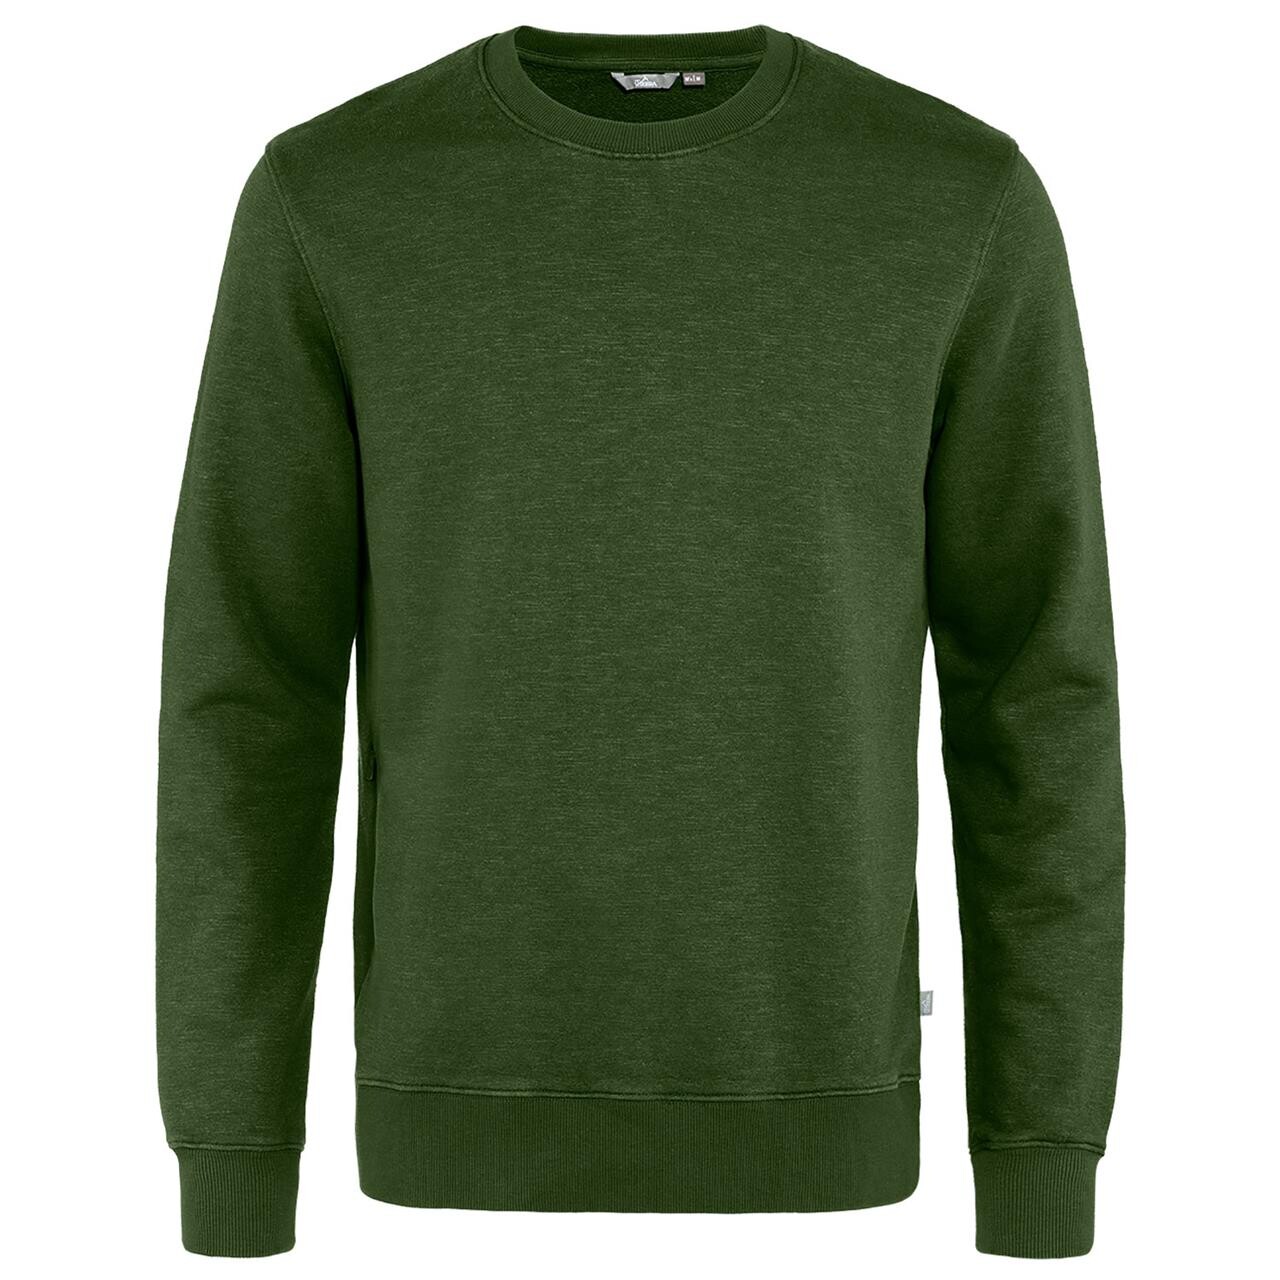 #2 - Tierra Mens Hempy Sweater  (Grøn (MOSS GREEN) Small)